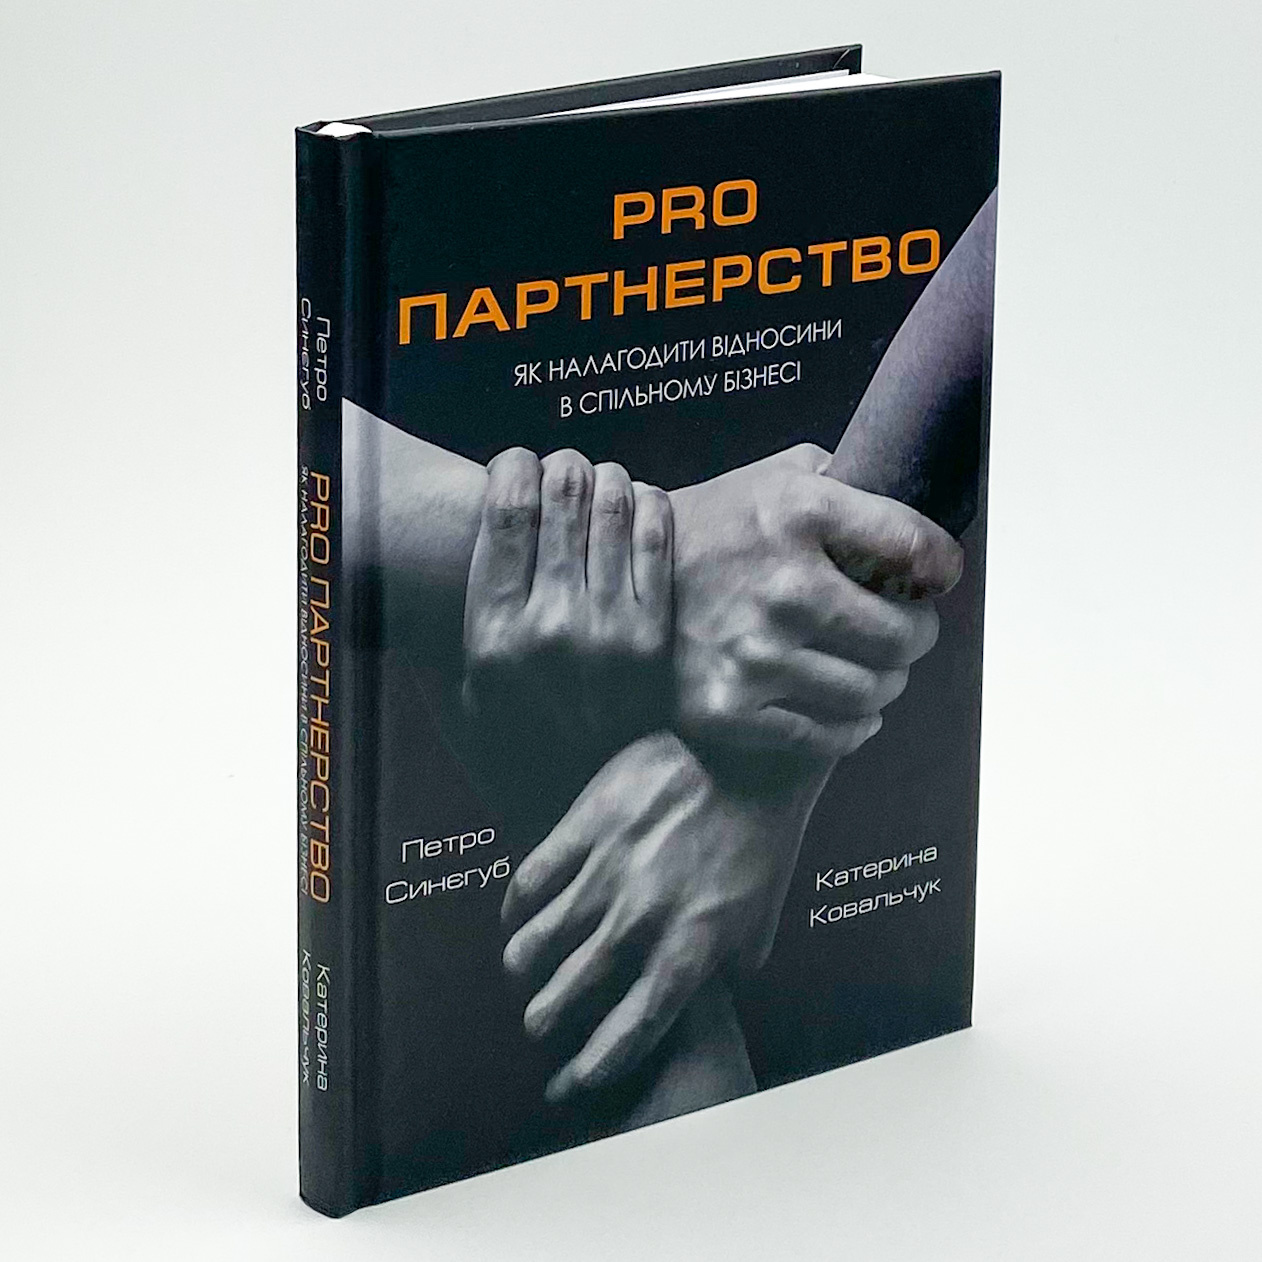 Pro партнерство. Як налагодити відносини в спільному бізнесі. Автор — Петро Синєгуб, Катерина Ковальчук. 